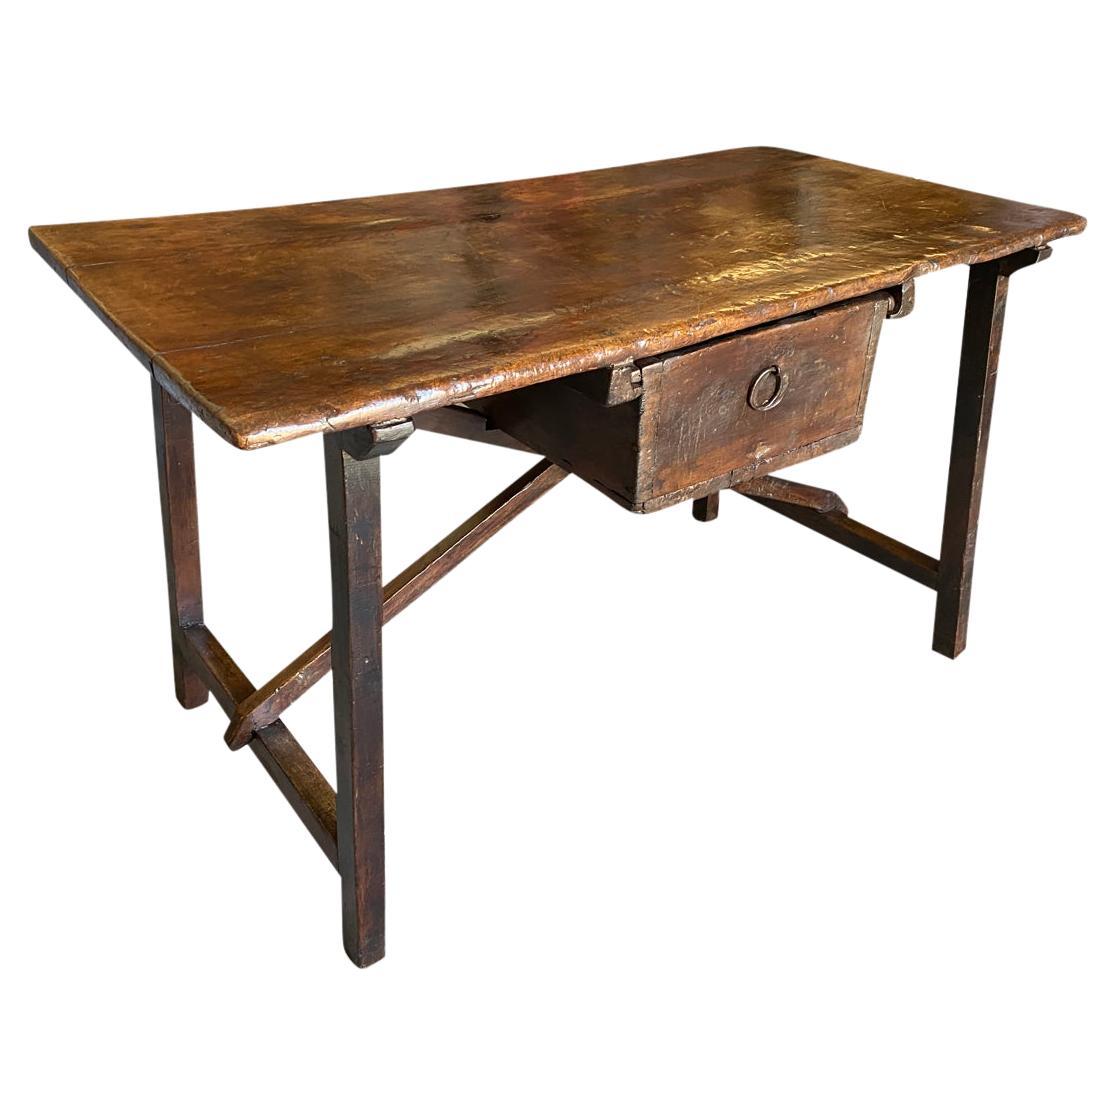 Italienischer Schreibtisch aus dem 17. Jahrhundert – Beistelltisch